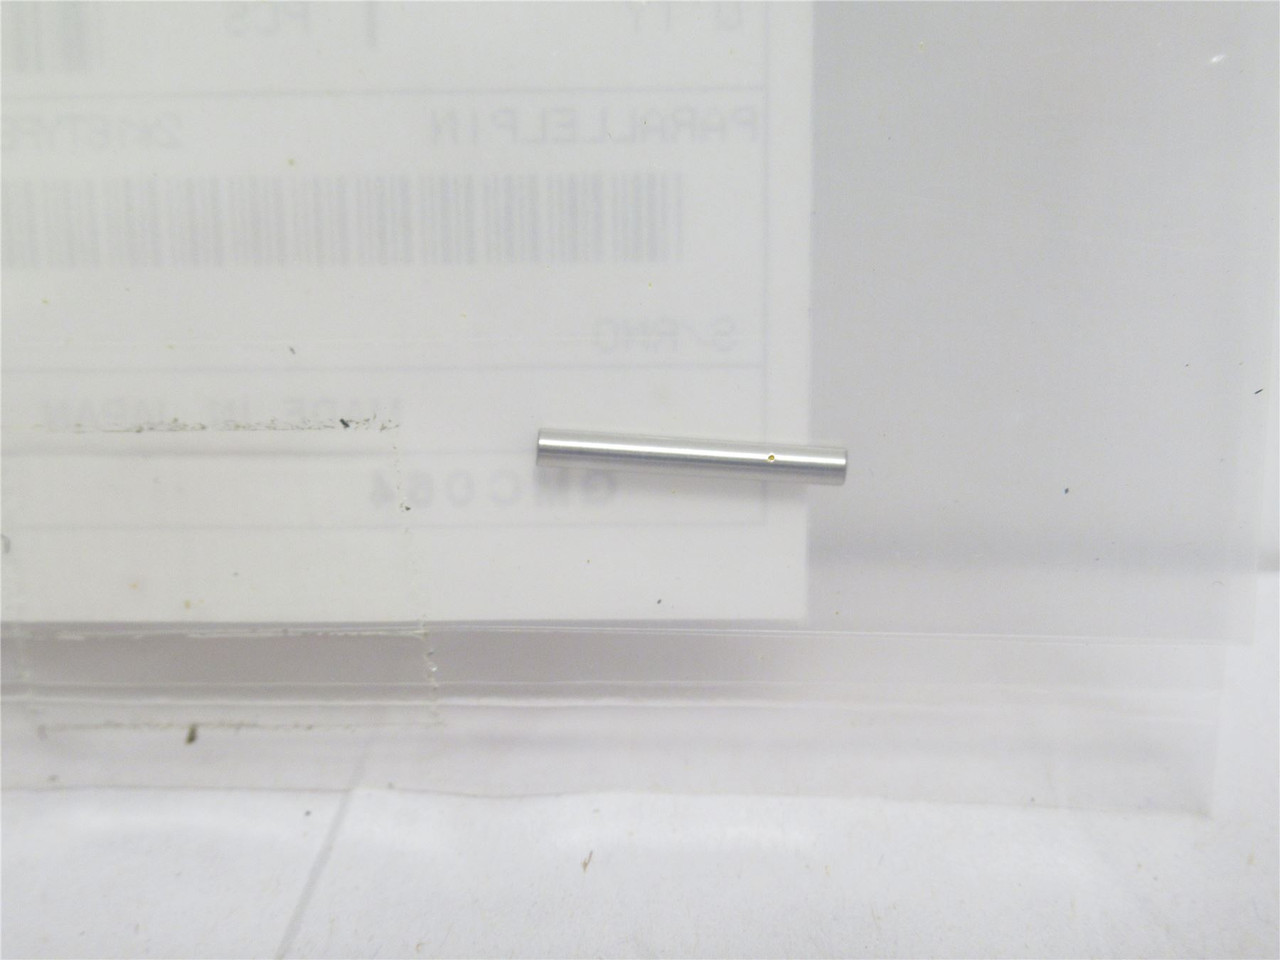 Sato NG2201630; Lot-5; Parallel Pins; 2mmOD x 16mm Long